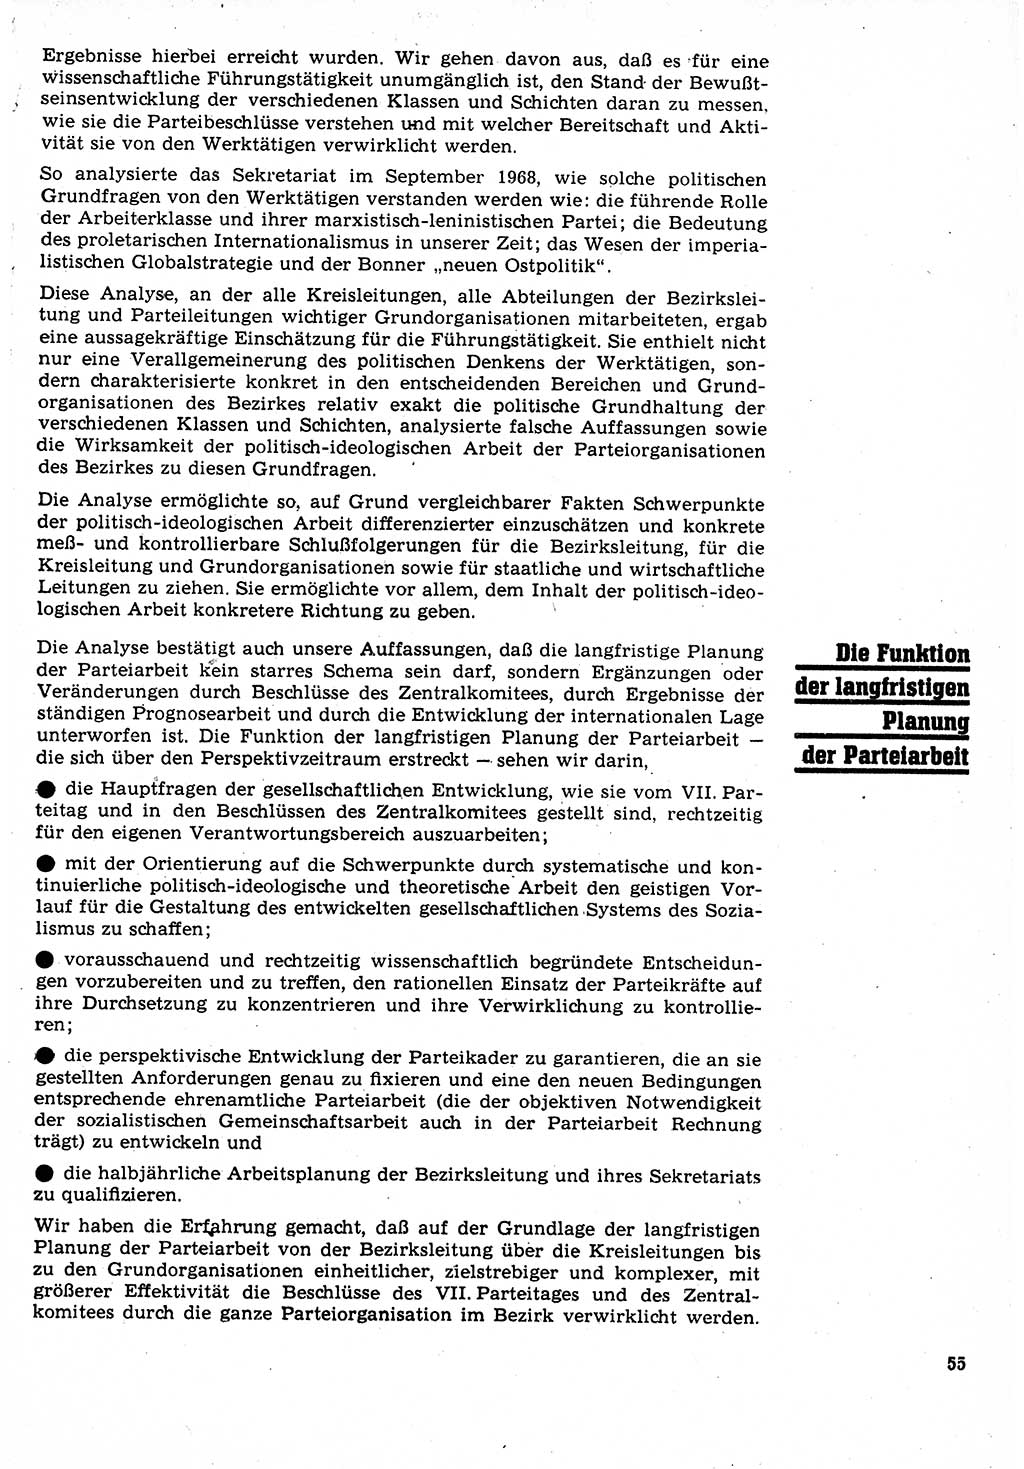 Neuer Weg (NW), Organ des Zentralkomitees (ZK) der SED (Sozialistische Einheitspartei Deutschlands) für Fragen des Parteilebens, 24. Jahrgang [Deutsche Demokratische Republik (DDR)] 1969, Seite 55 (NW ZK SED DDR 1969, S. 55)